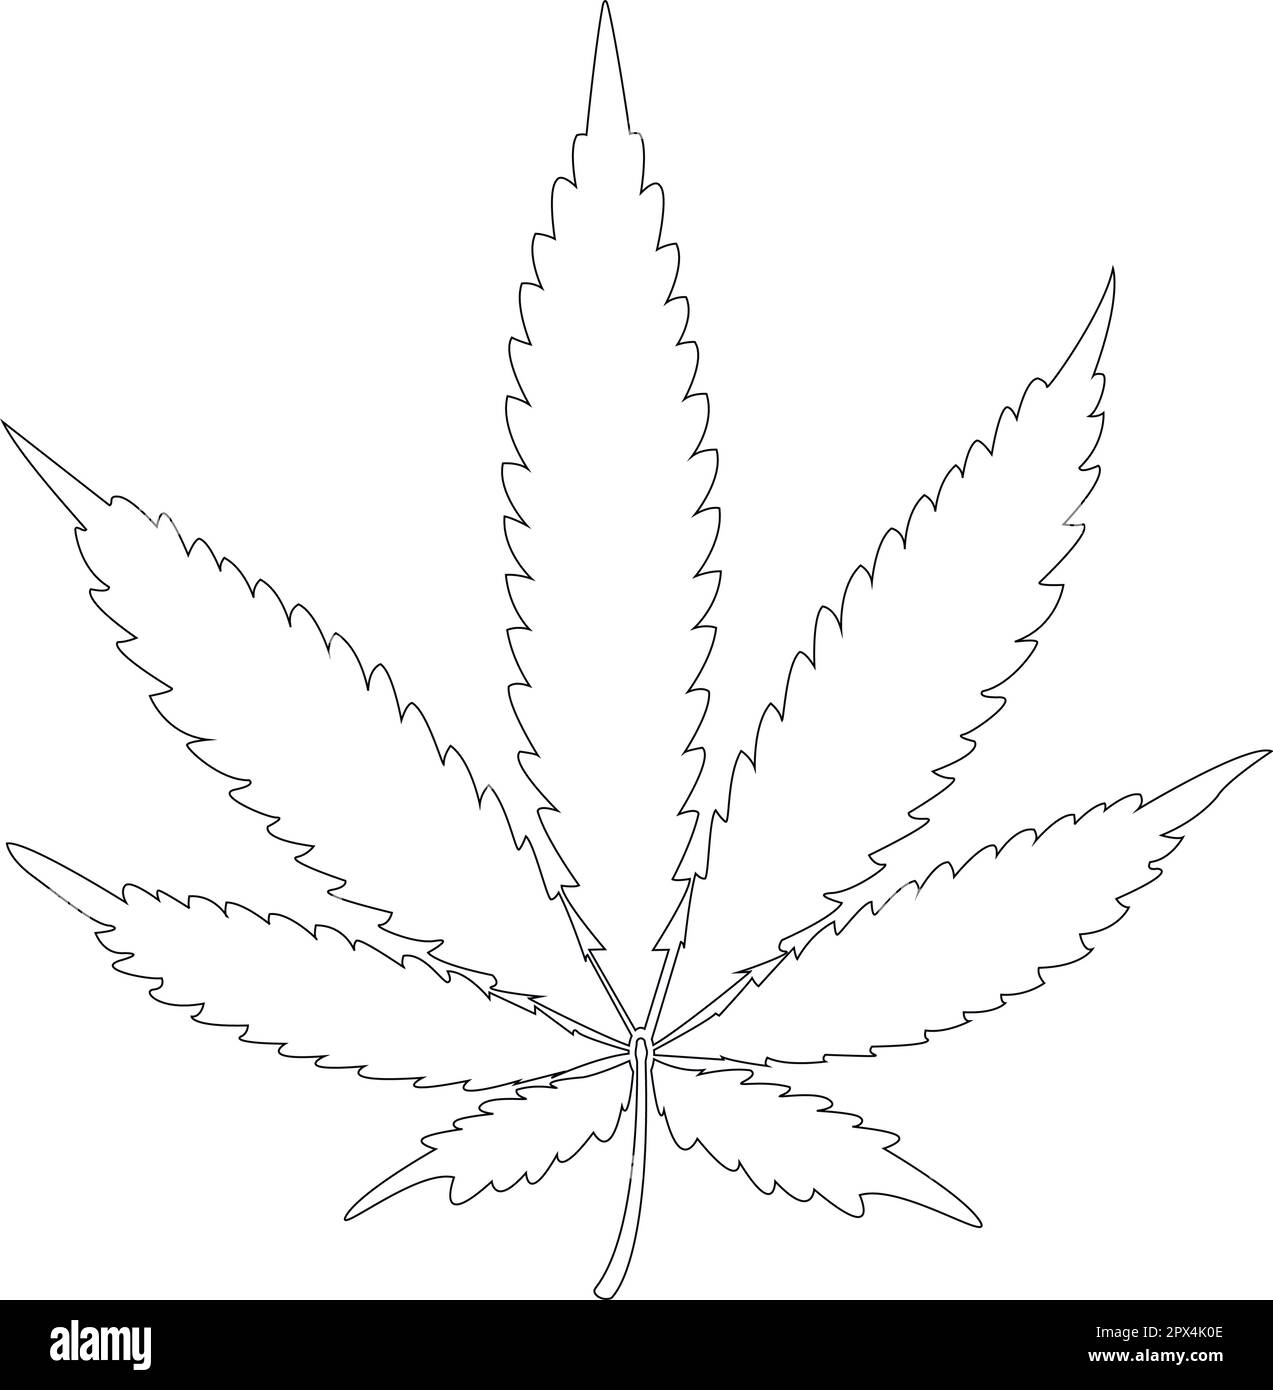 Schematische Darstellung eines Cannabisblattes. Schaltkreis. Konstruktionselement. Vektordarstellung. Stock Vektor